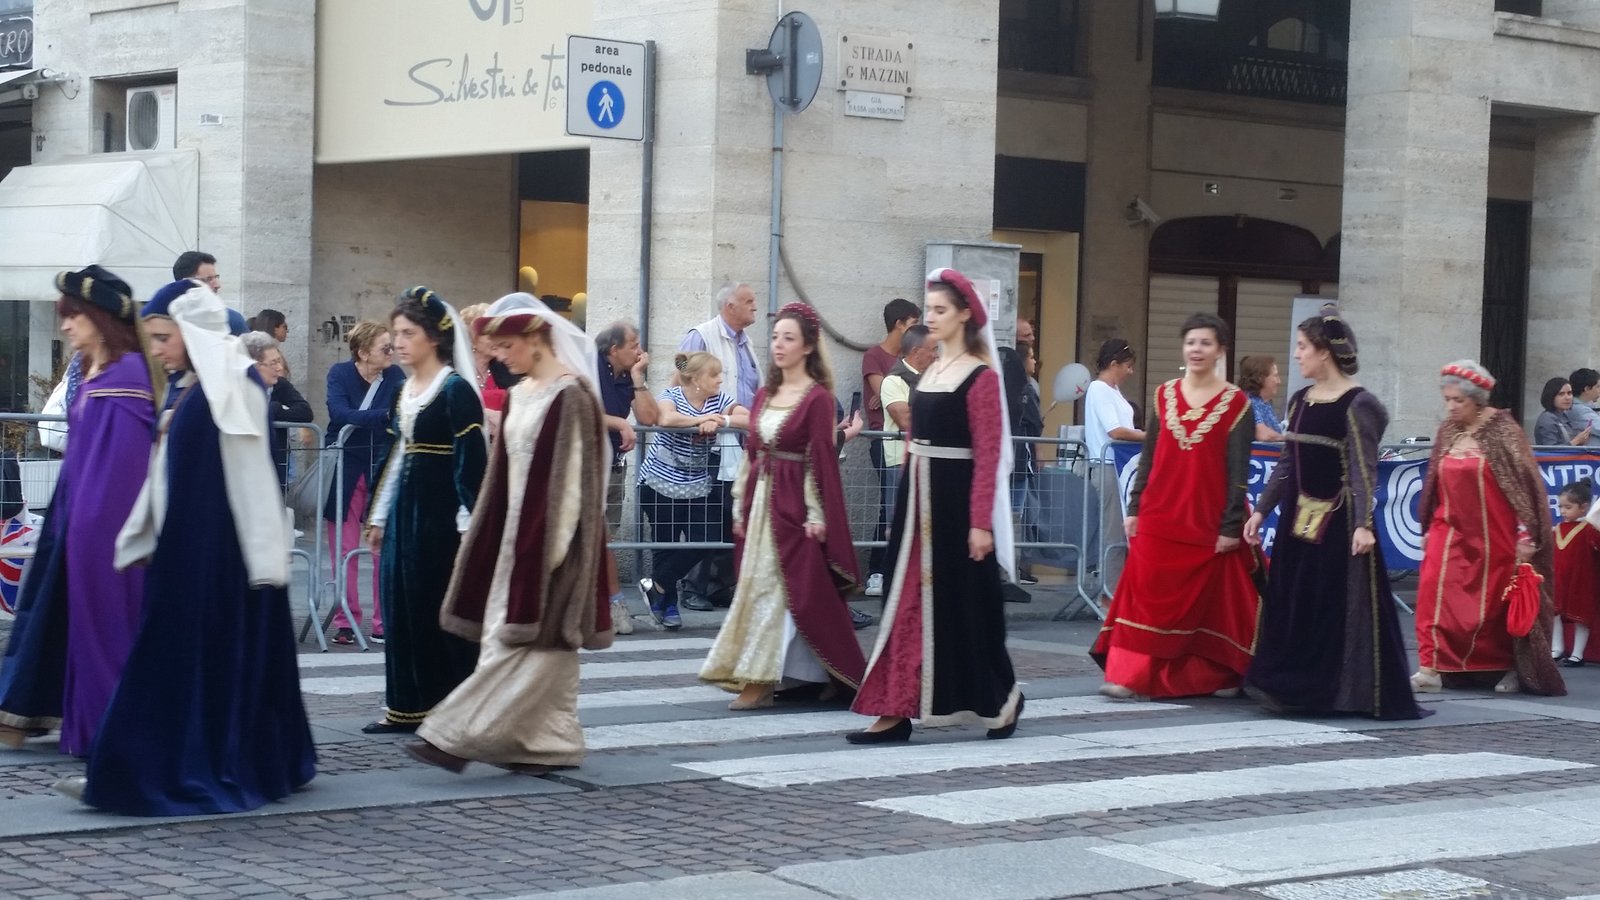 Medieval parade for Palio di Parma, Parma, Italy